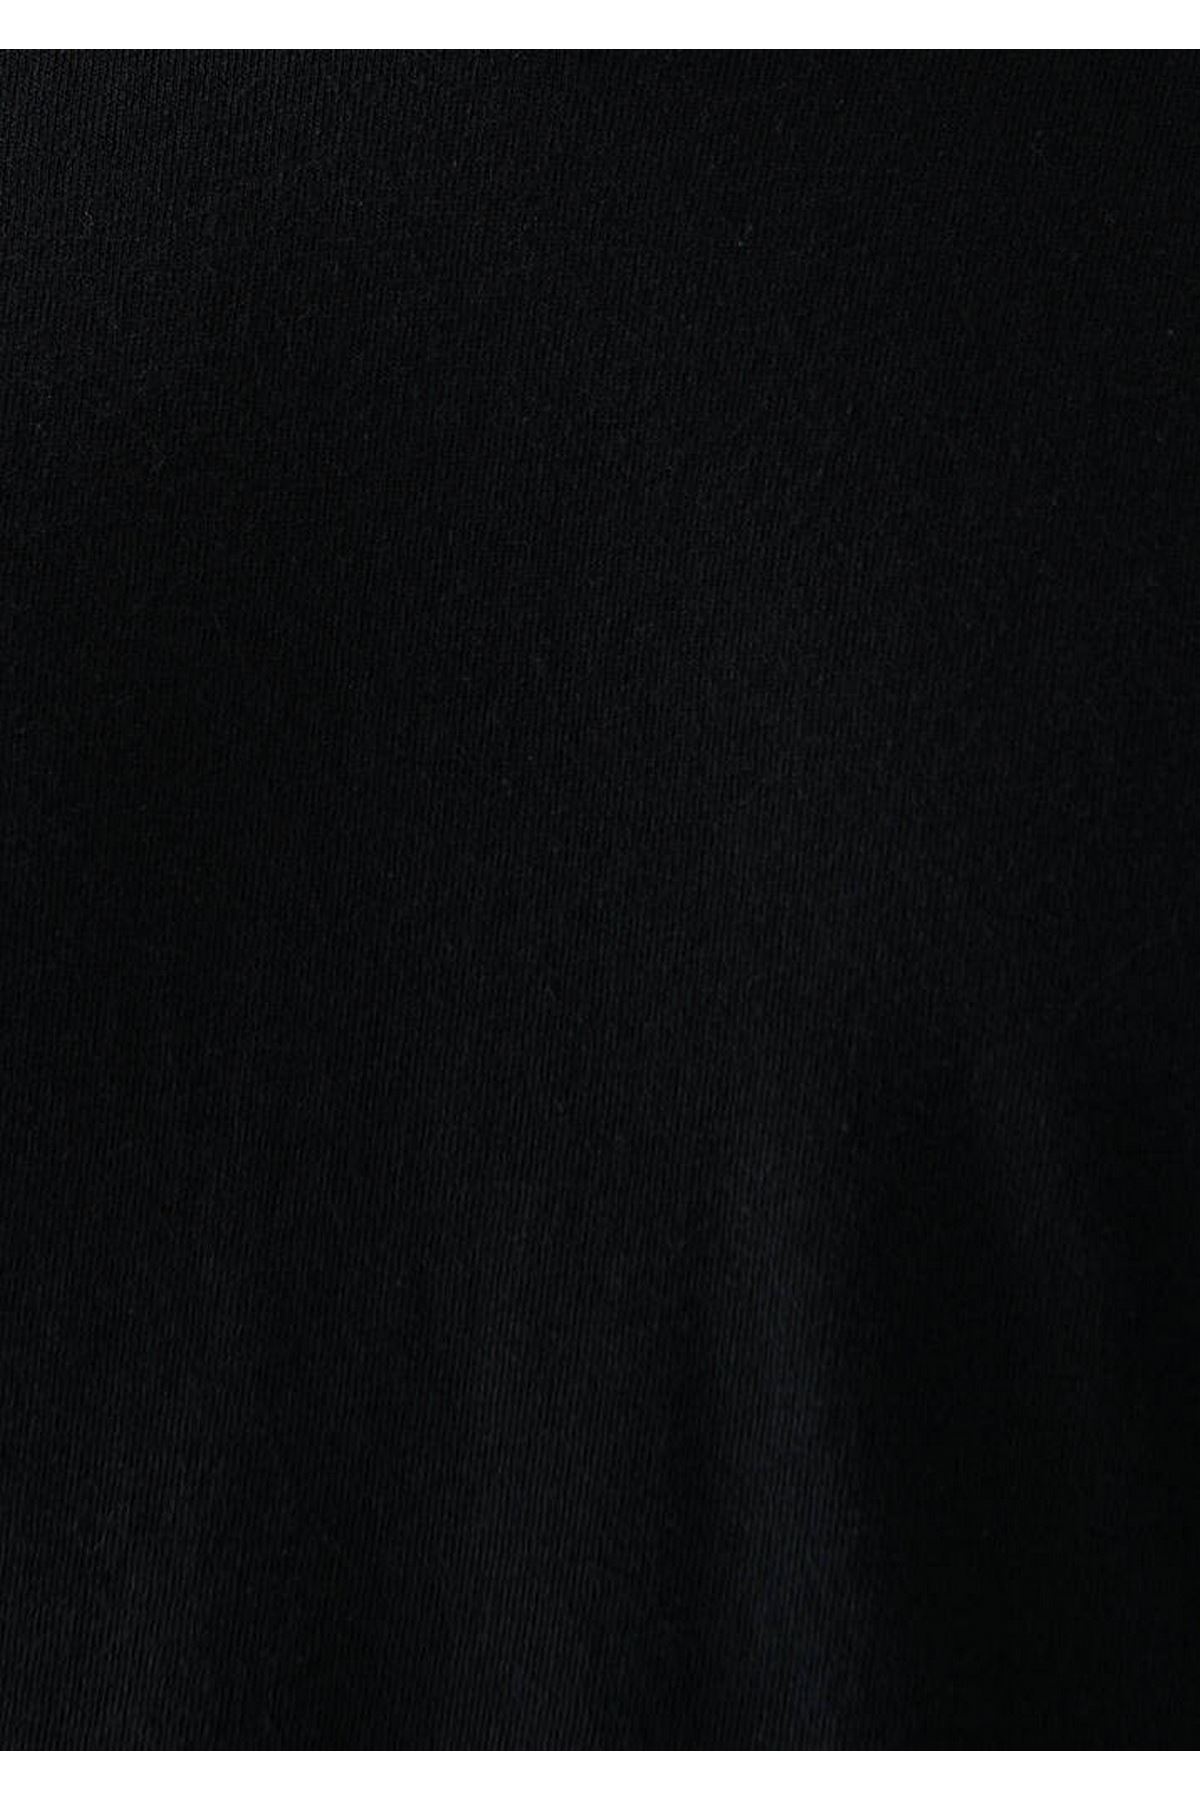 V Yaka Mavi Erkek Siyah Tişört - M065586-900